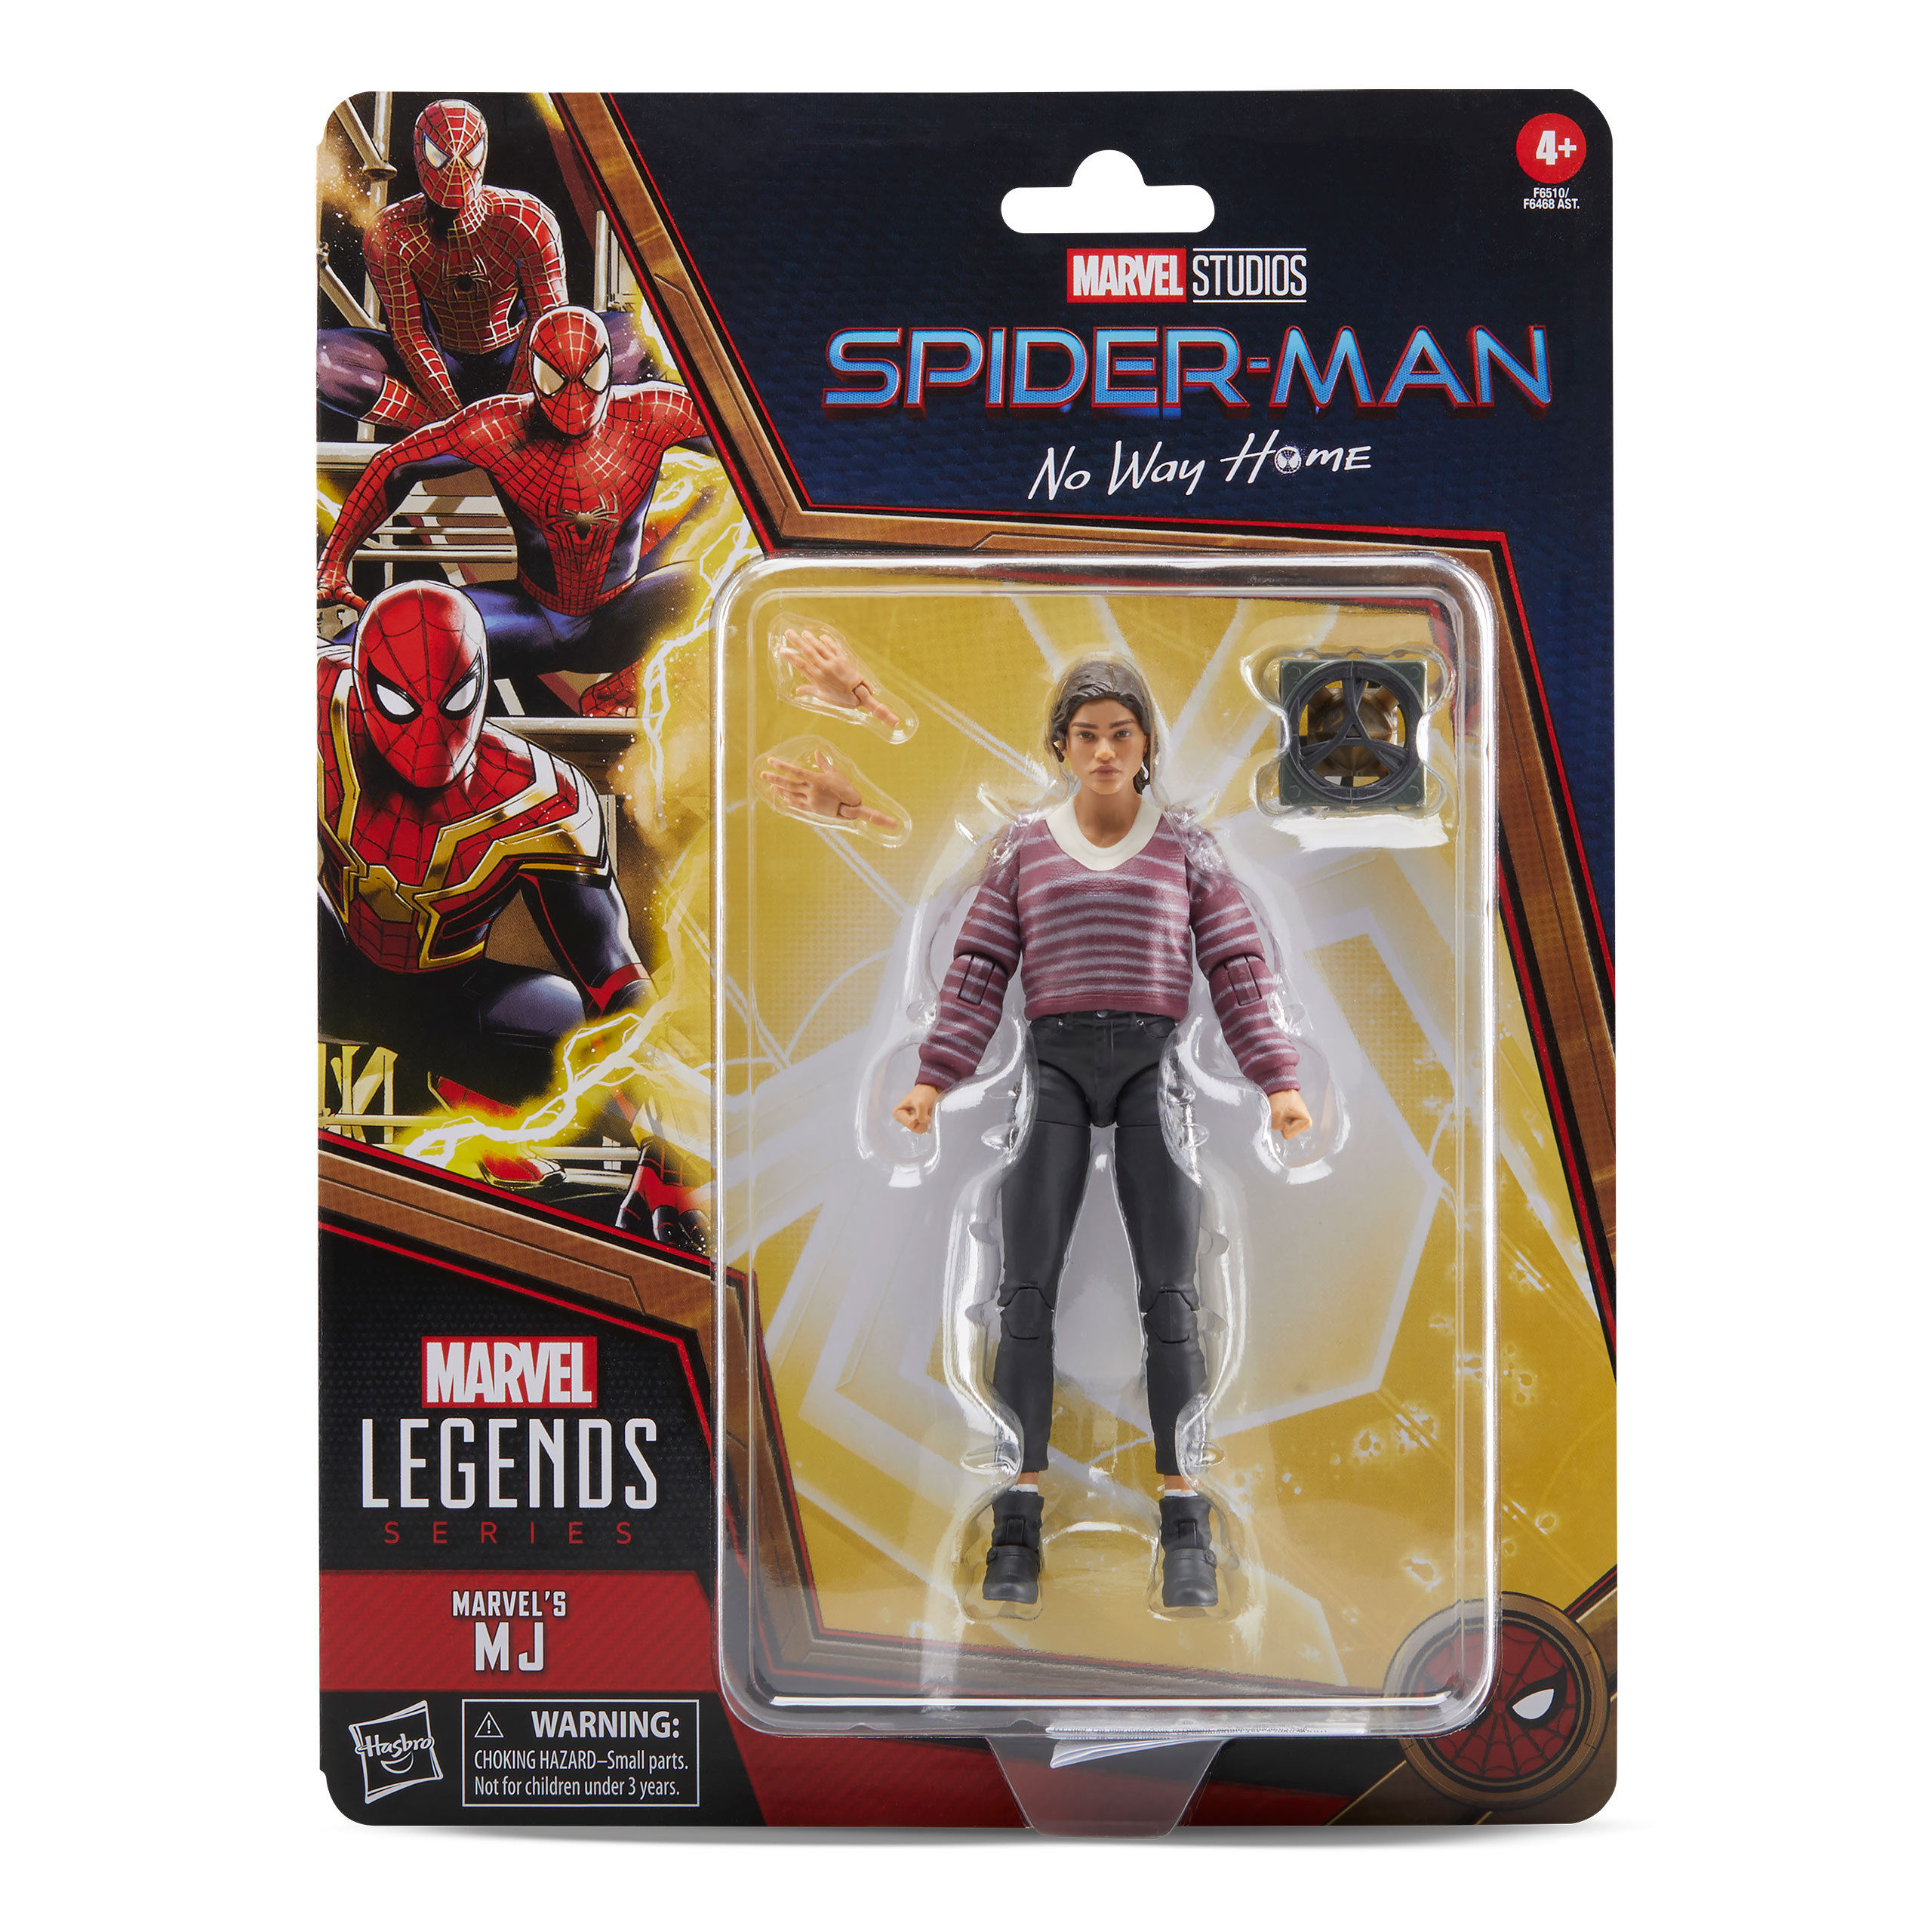 Spider-Man: No Way Home - MJ Marvel Legends Actionfigur